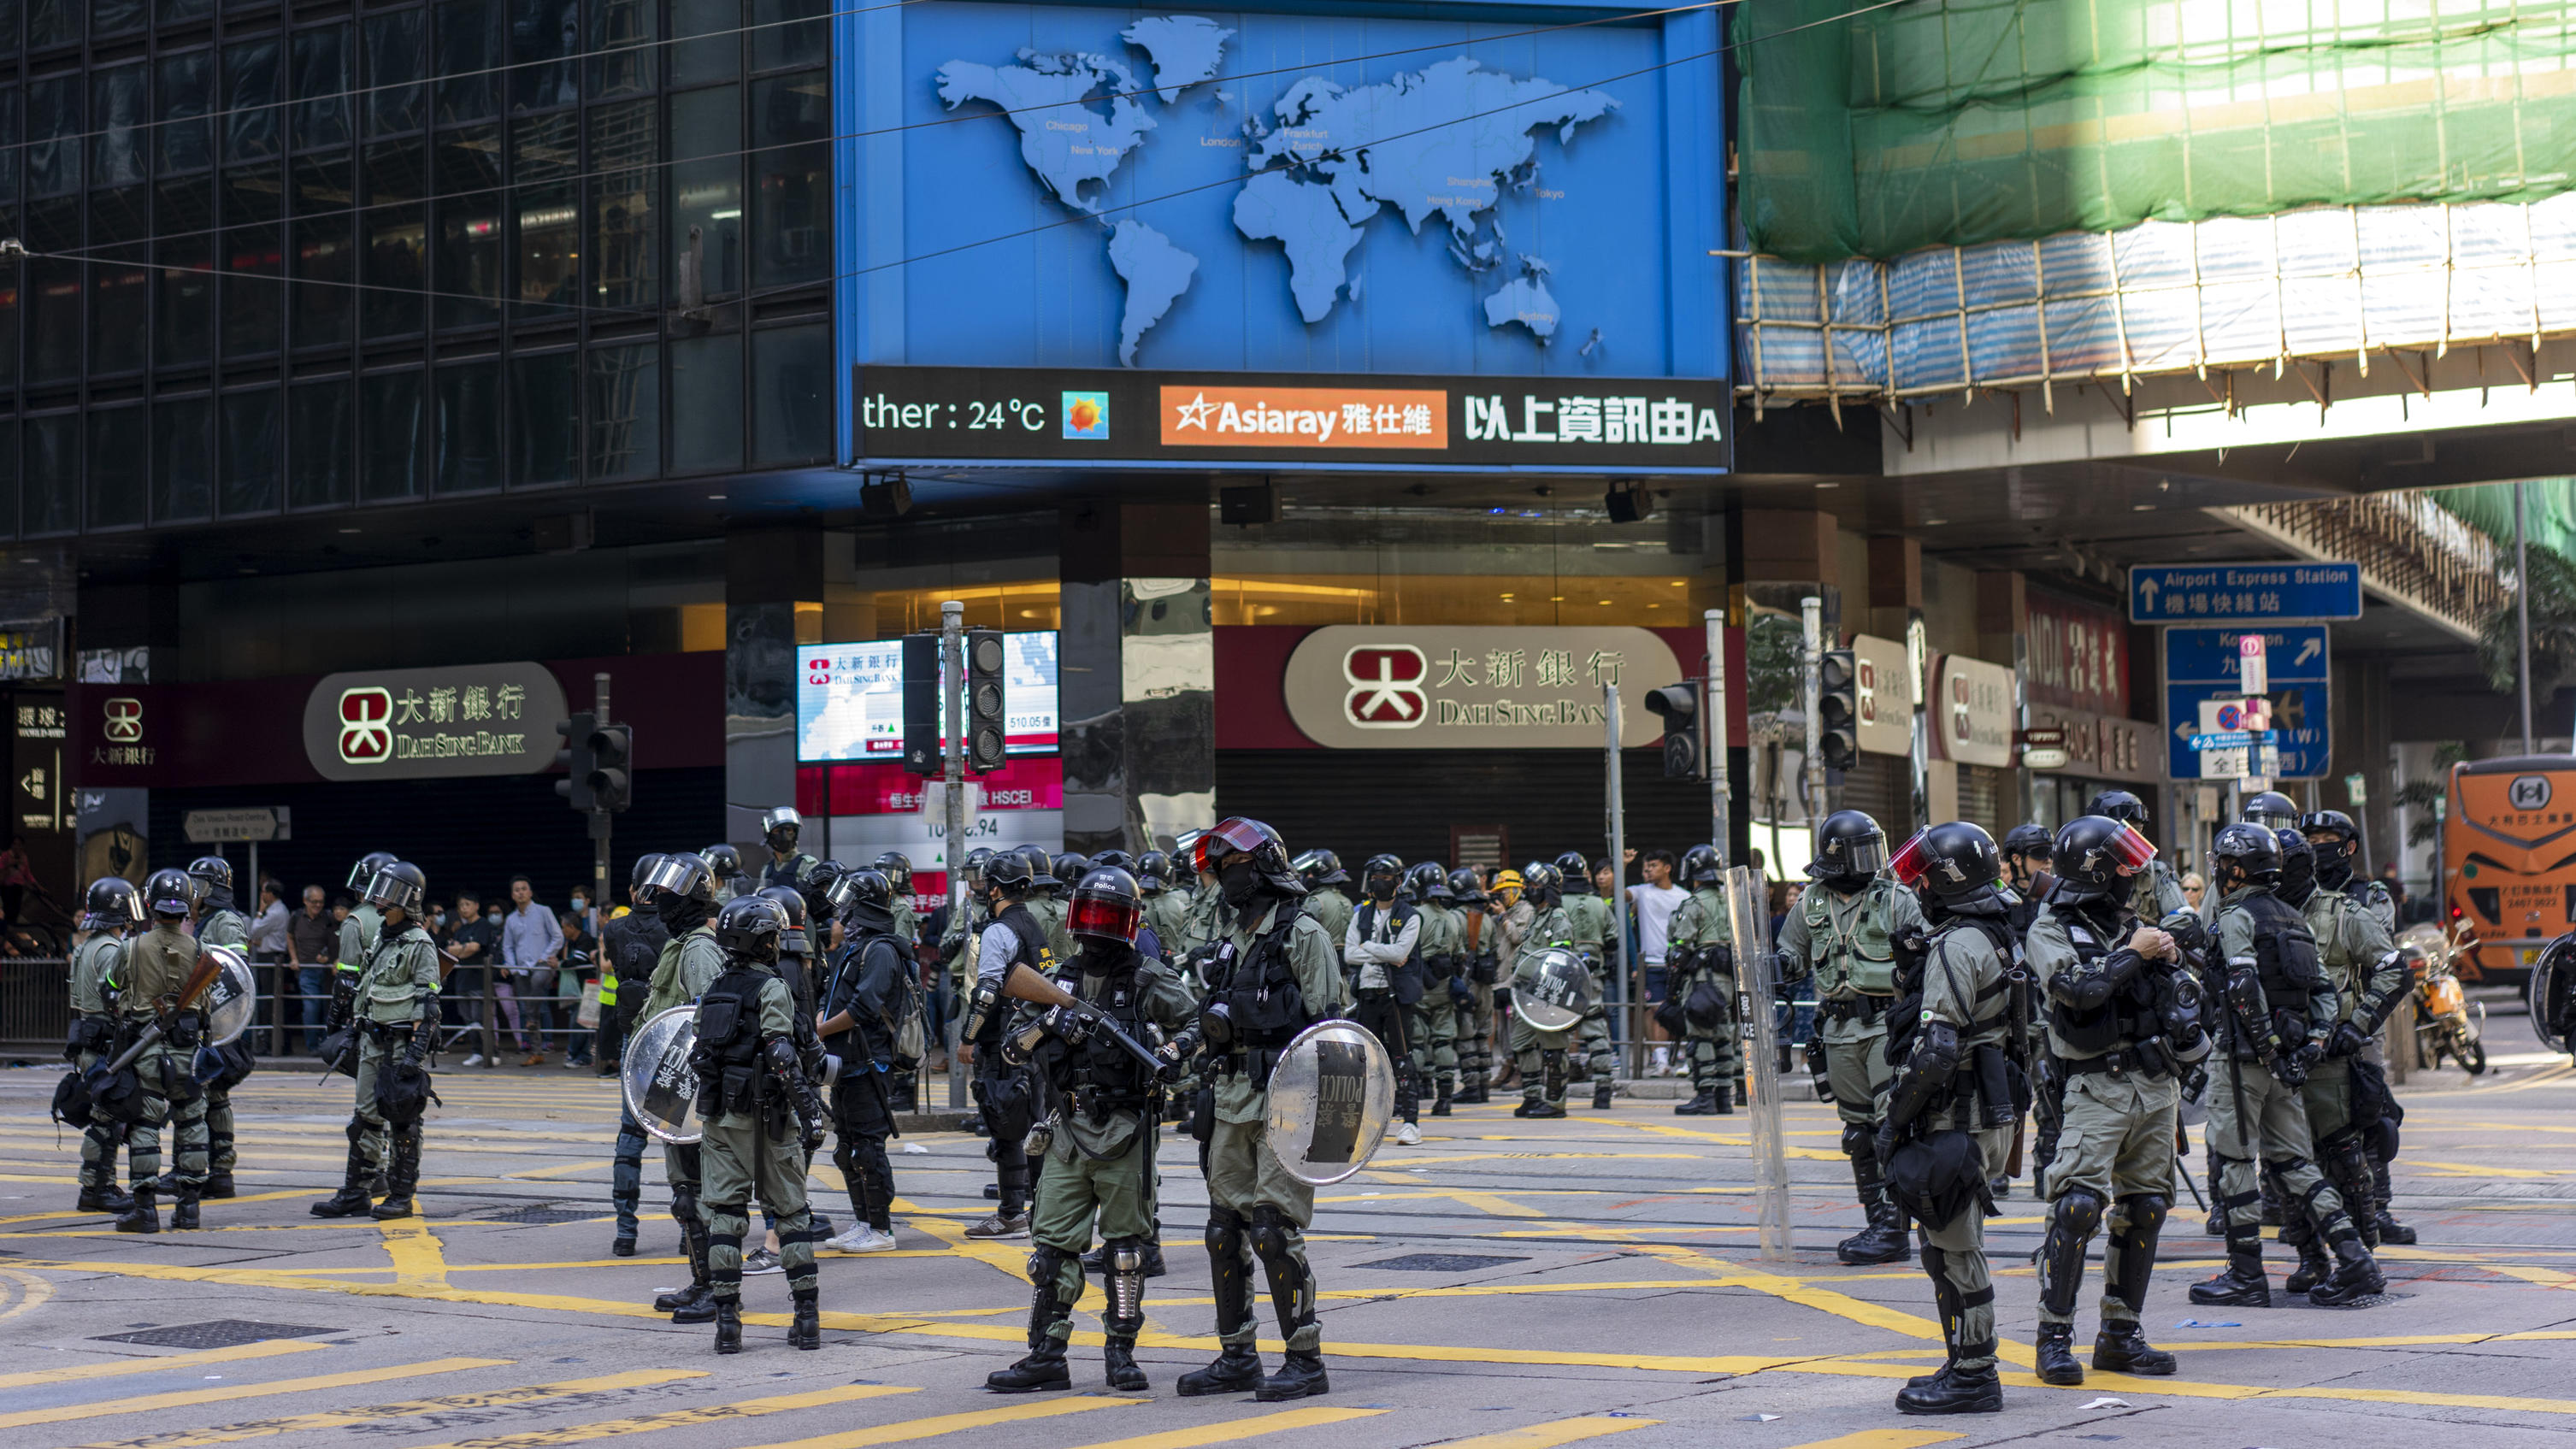  Hongkong - Hongkong - 15.11.2019 / Hong Kong Island - Central - Proteste in Hongkong 2019 / Proteste gegen Polizeigewalt - das große Aufräumen unter der Aufsicht der Polizei / Polizei mit Schild und Tränengas und Kampfausrüstung stehen am Zebrastrei